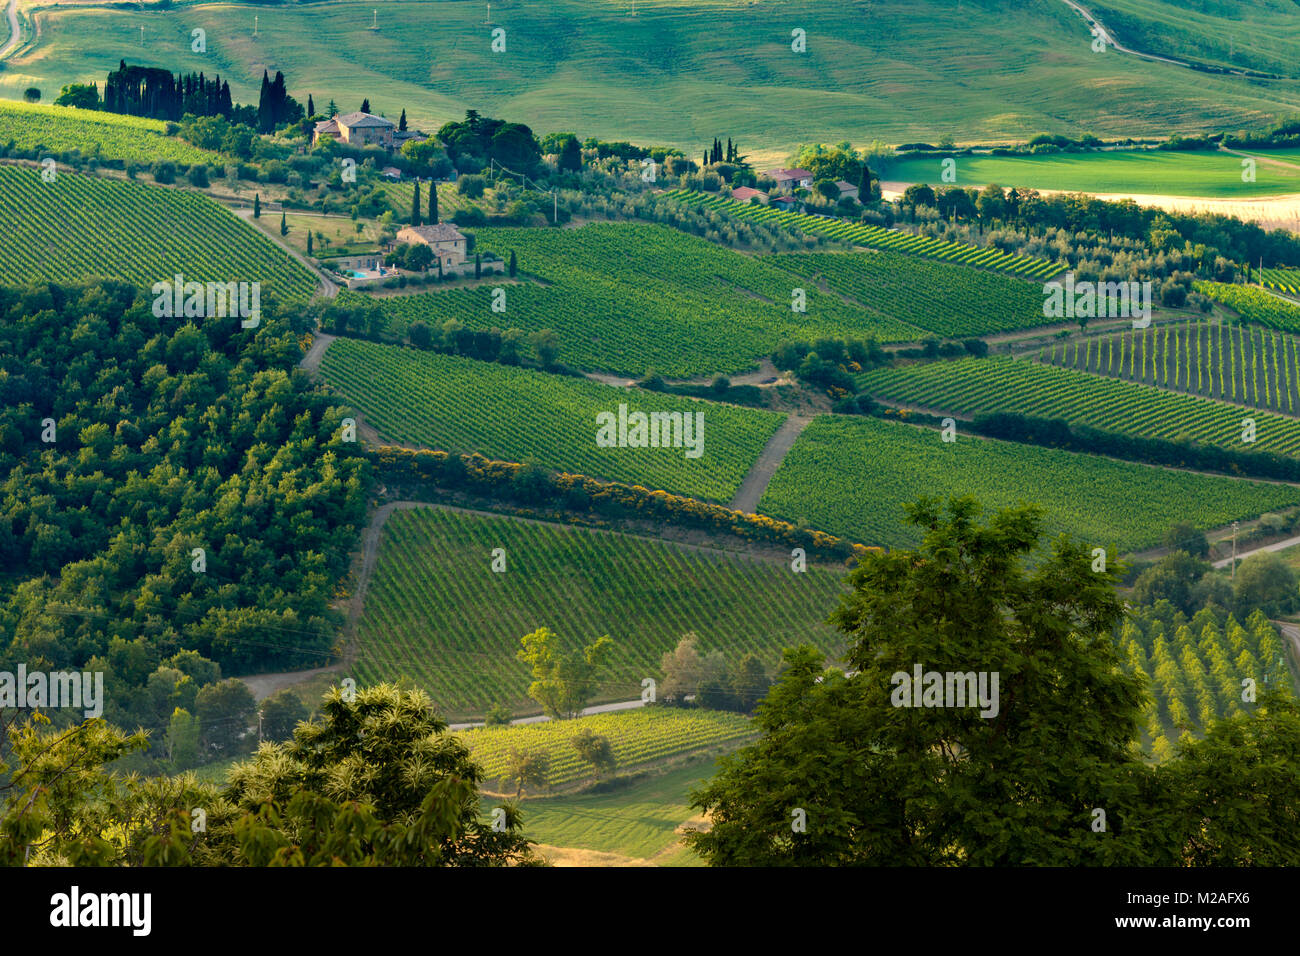 Abrite les célèbres vins de Brunello di Montalcino, les collines ondoyantes et les vignobles entourant Montalcino, Toscane, Italie Banque D'Images